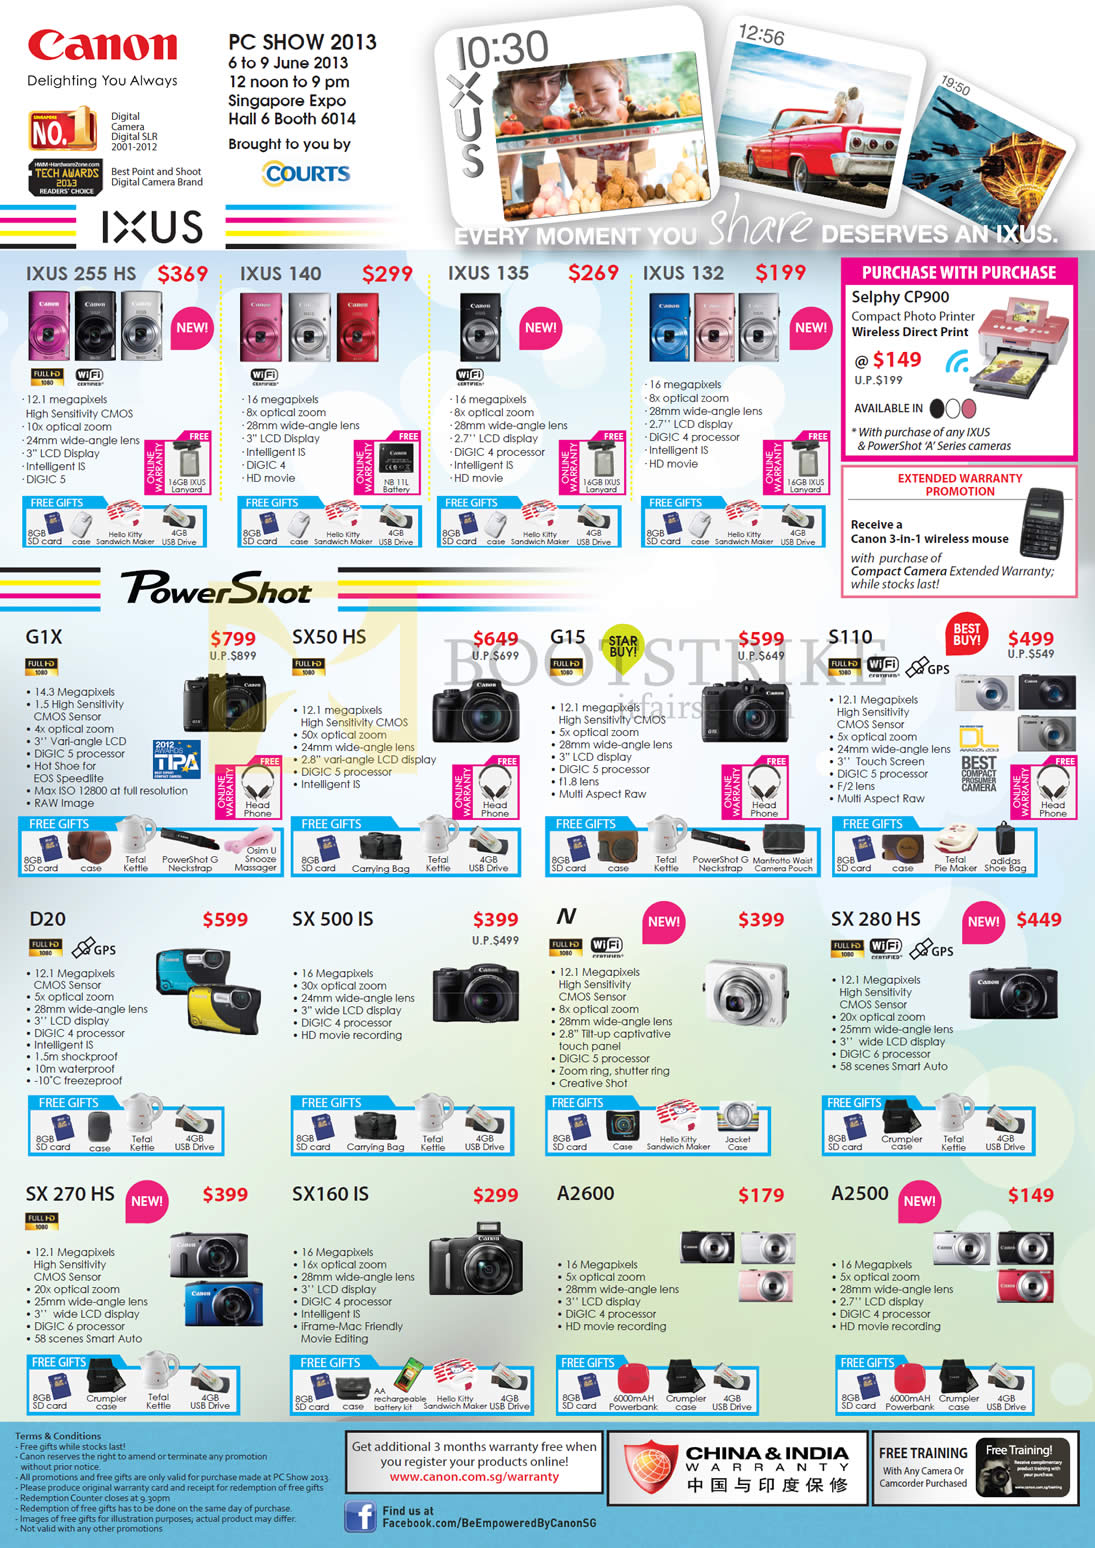 PC SHOW 2013 price list image brochure of Canon Digital Cameras IXUS 255 HS, 140, 135, 132, Powershot G1X, SX50 HS, G15, S110, D20, SX 500 IS, N, SX 280 HS, SX 270 HS, SX160 IS, A2600, A2500